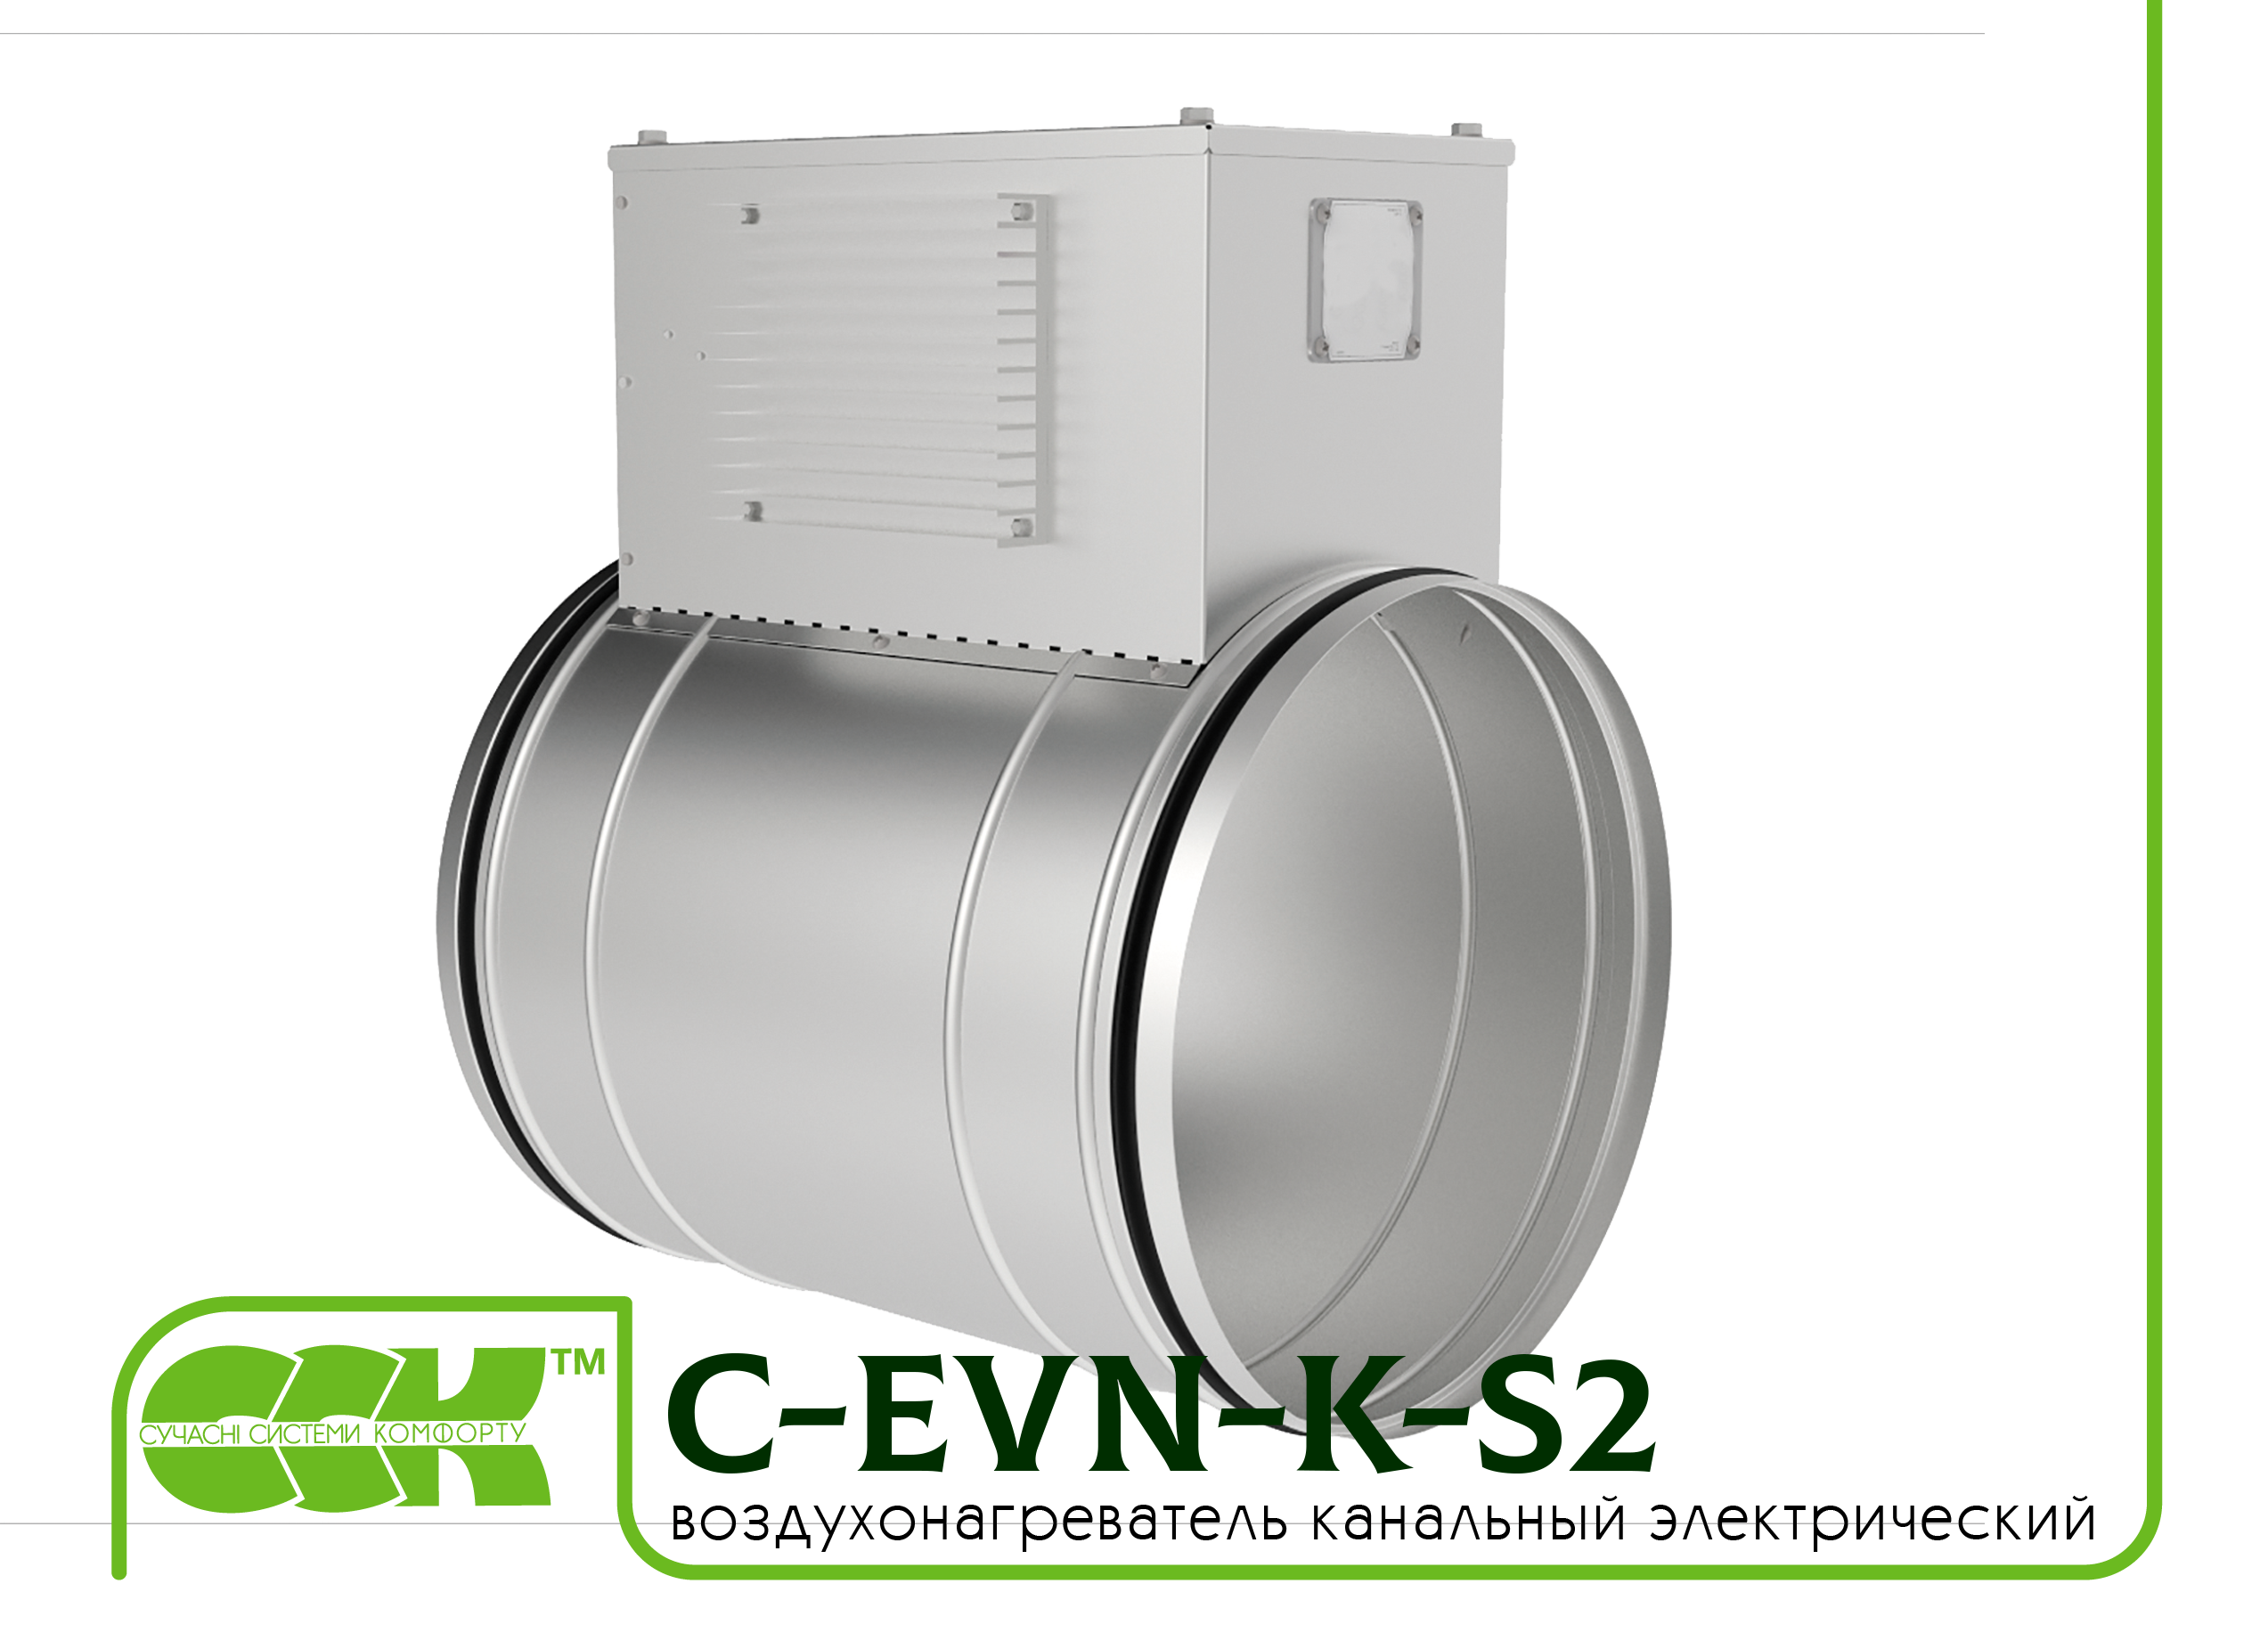 Воздухонагреватель канальный электрический для круглых каналов C-EVN-K-S2-315-3,0